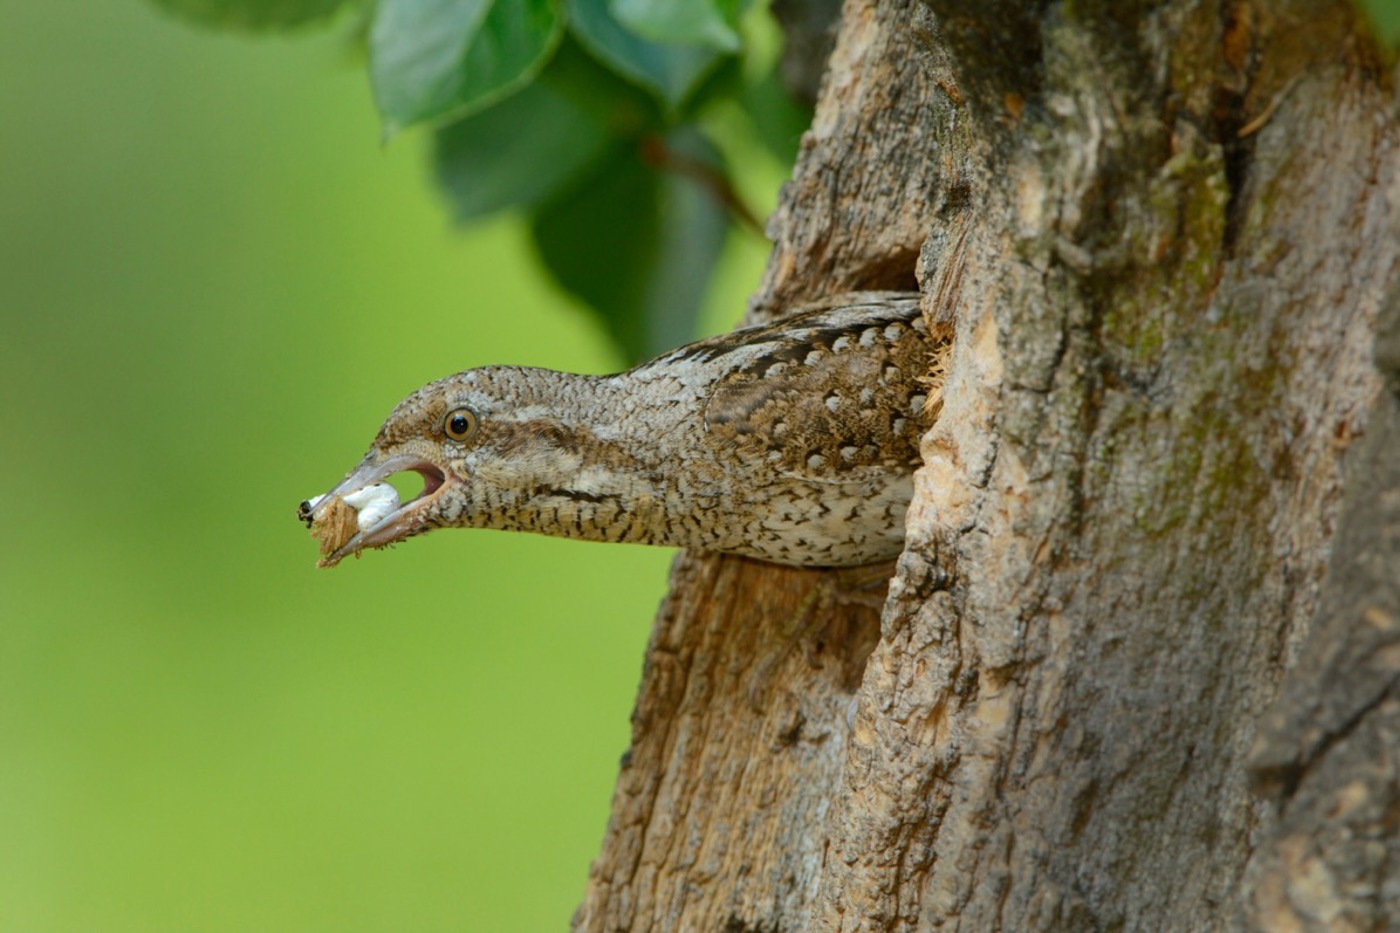 Um das Nest sauber zu halten, trägt dieser Wendehals einen Kotballen aus dem Nest. © mauritius/Blickwinkel/Alamy